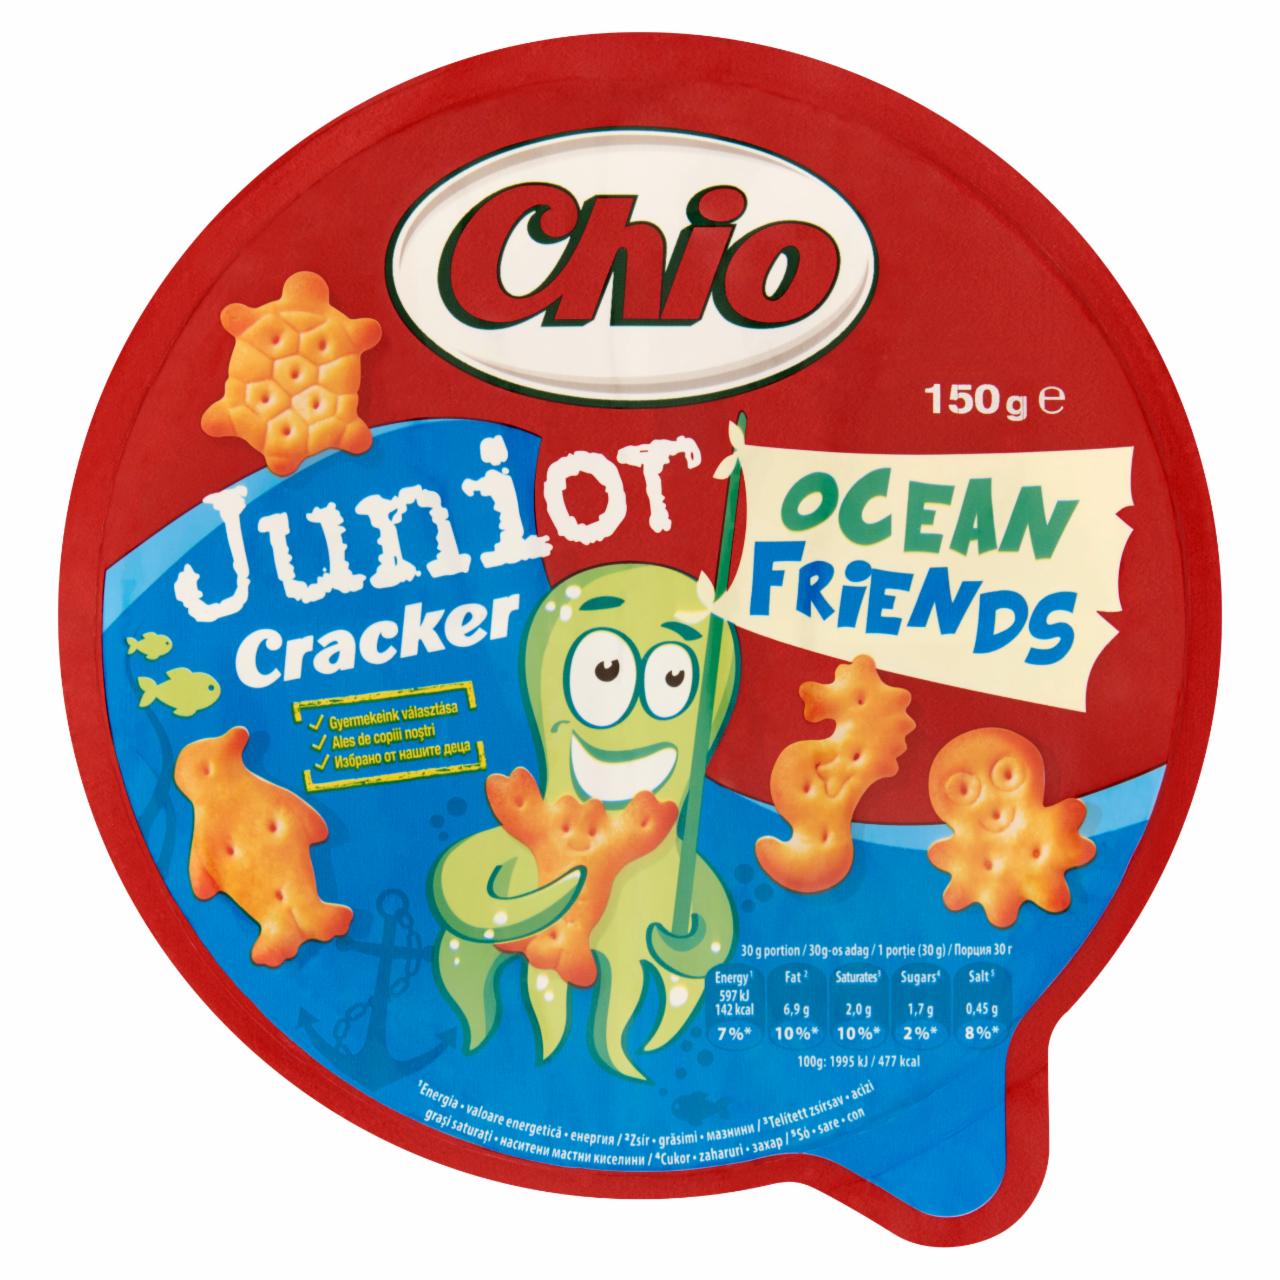 Képek - Chio Junior Cracker Ocean Friends sós kréker 150 g